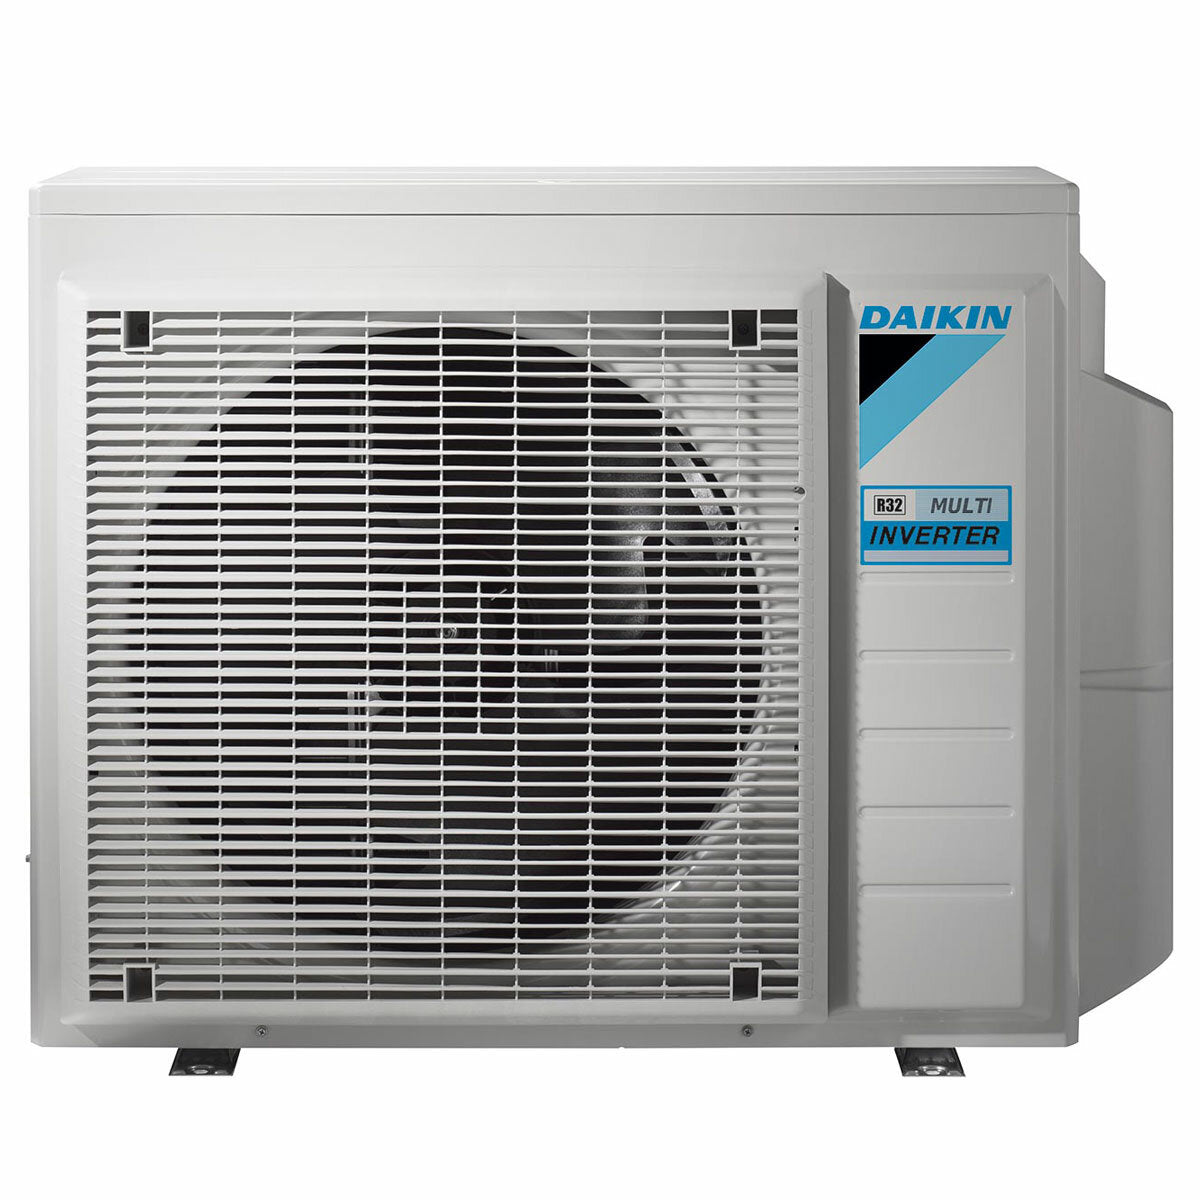 Daikin Emura Klimaanlage 3 Split Panels 7000+9000+9000+18000 BTU Wechselrichter A++ WLAN Außengerät 7,4 kW Schwarz